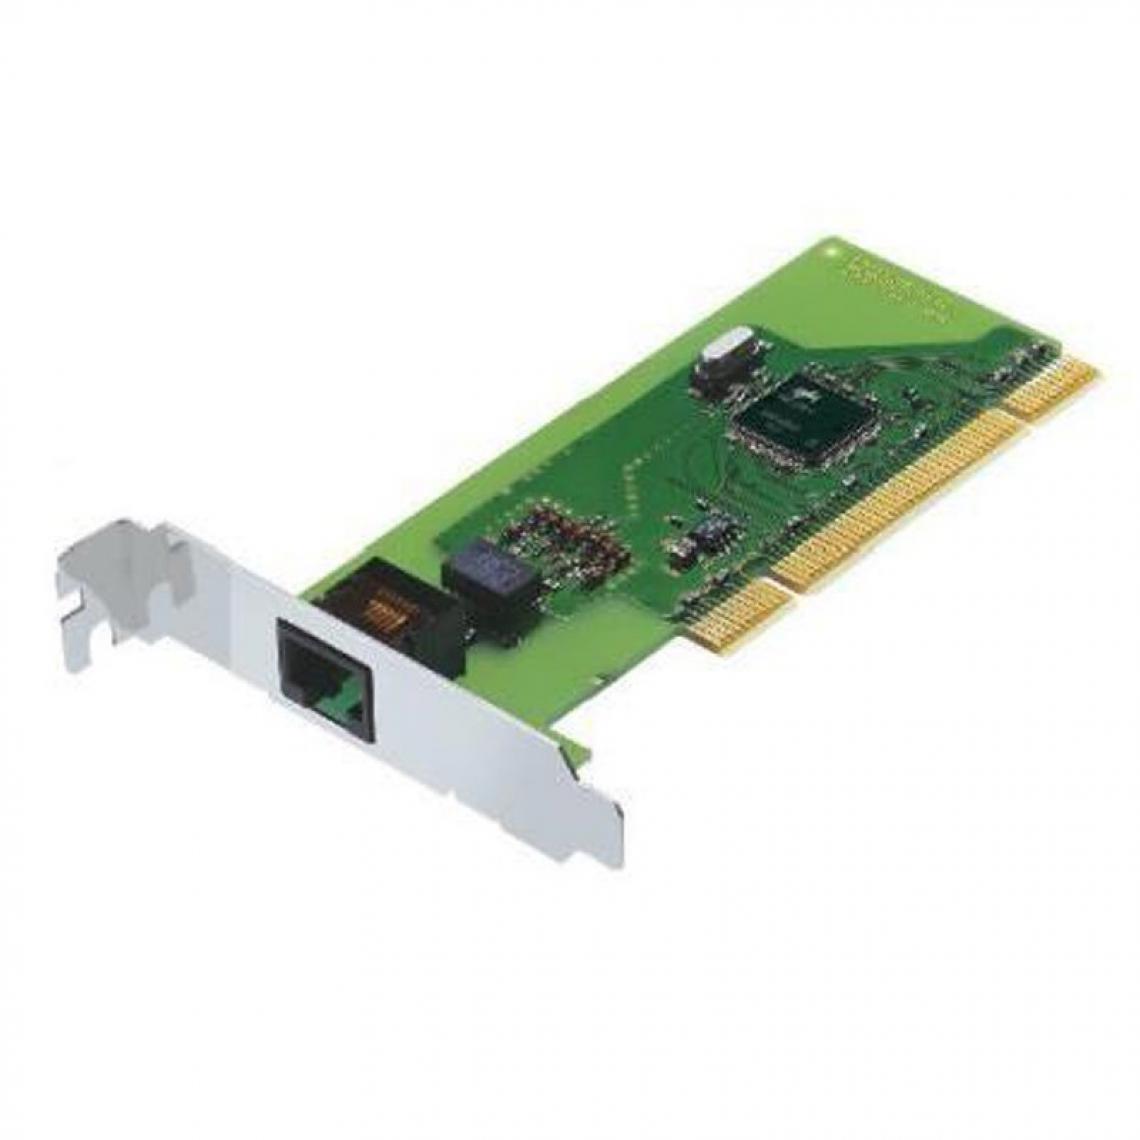 Fritz - Modem 240K PCI FRITZ! Card PCI V2.1 RNIS ISDN Numéris Chipset AVM Low Profile - Modem / Routeur / Points d'accès